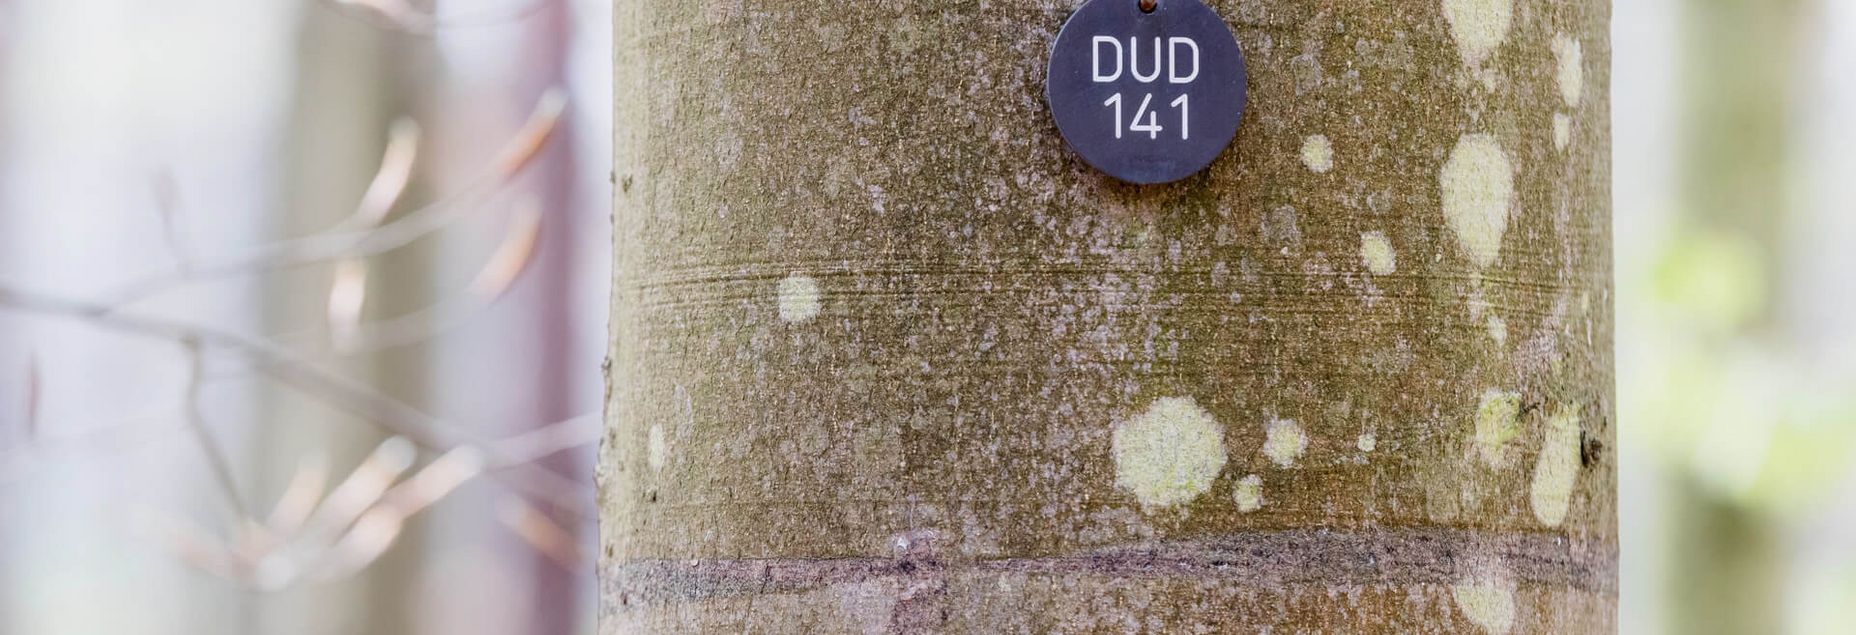 Baum DUD 141 - Plakette